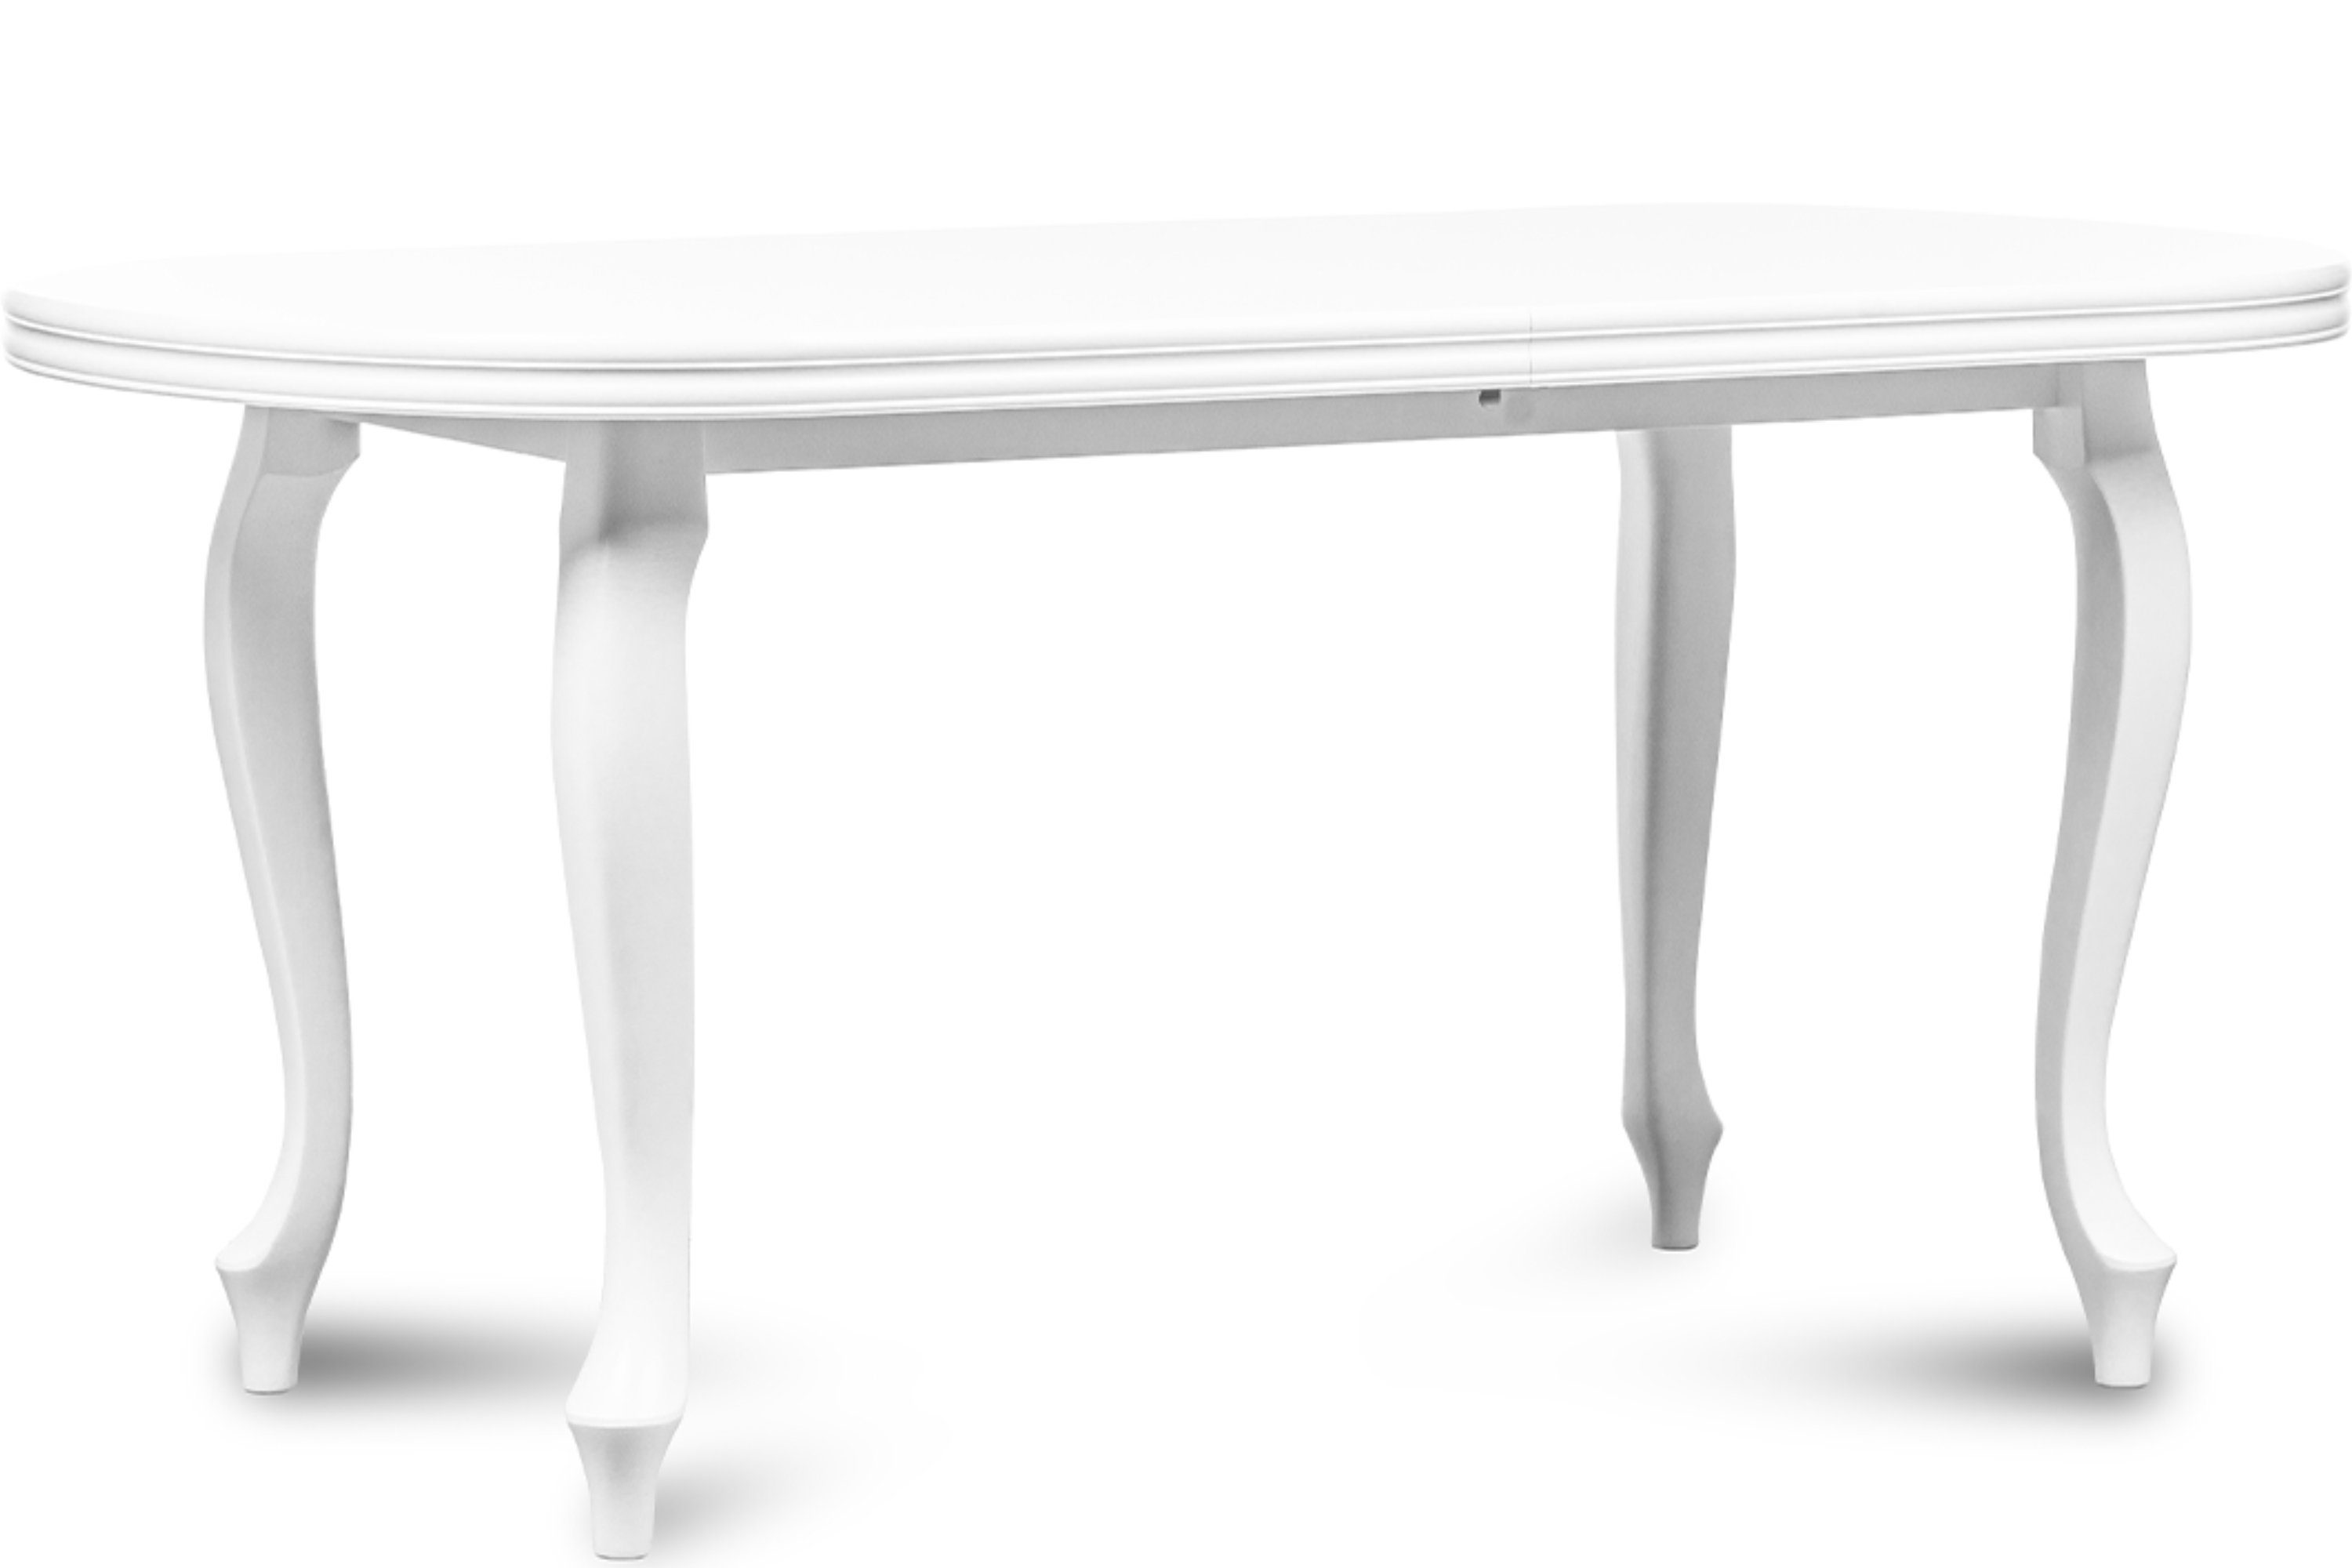 Konsimo Esstisch ALTIS Esszimmertisch Küchentisch 160x90cm, ausziehbar bis 240cm, oval weiß | weiß | weiß